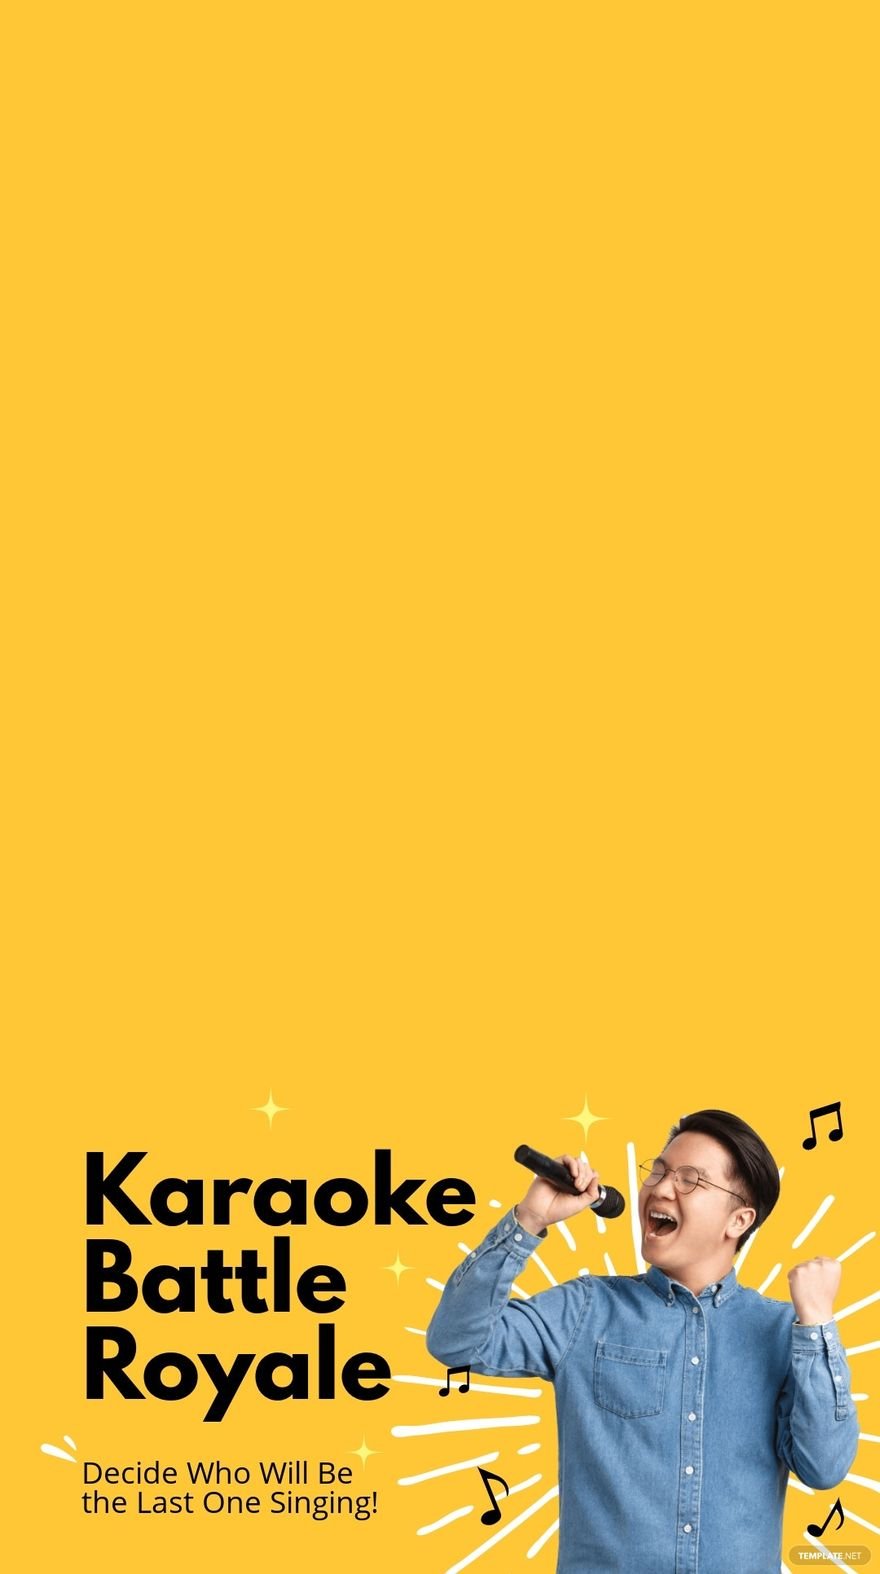 Karaoke Battle Snapchat Geofilter